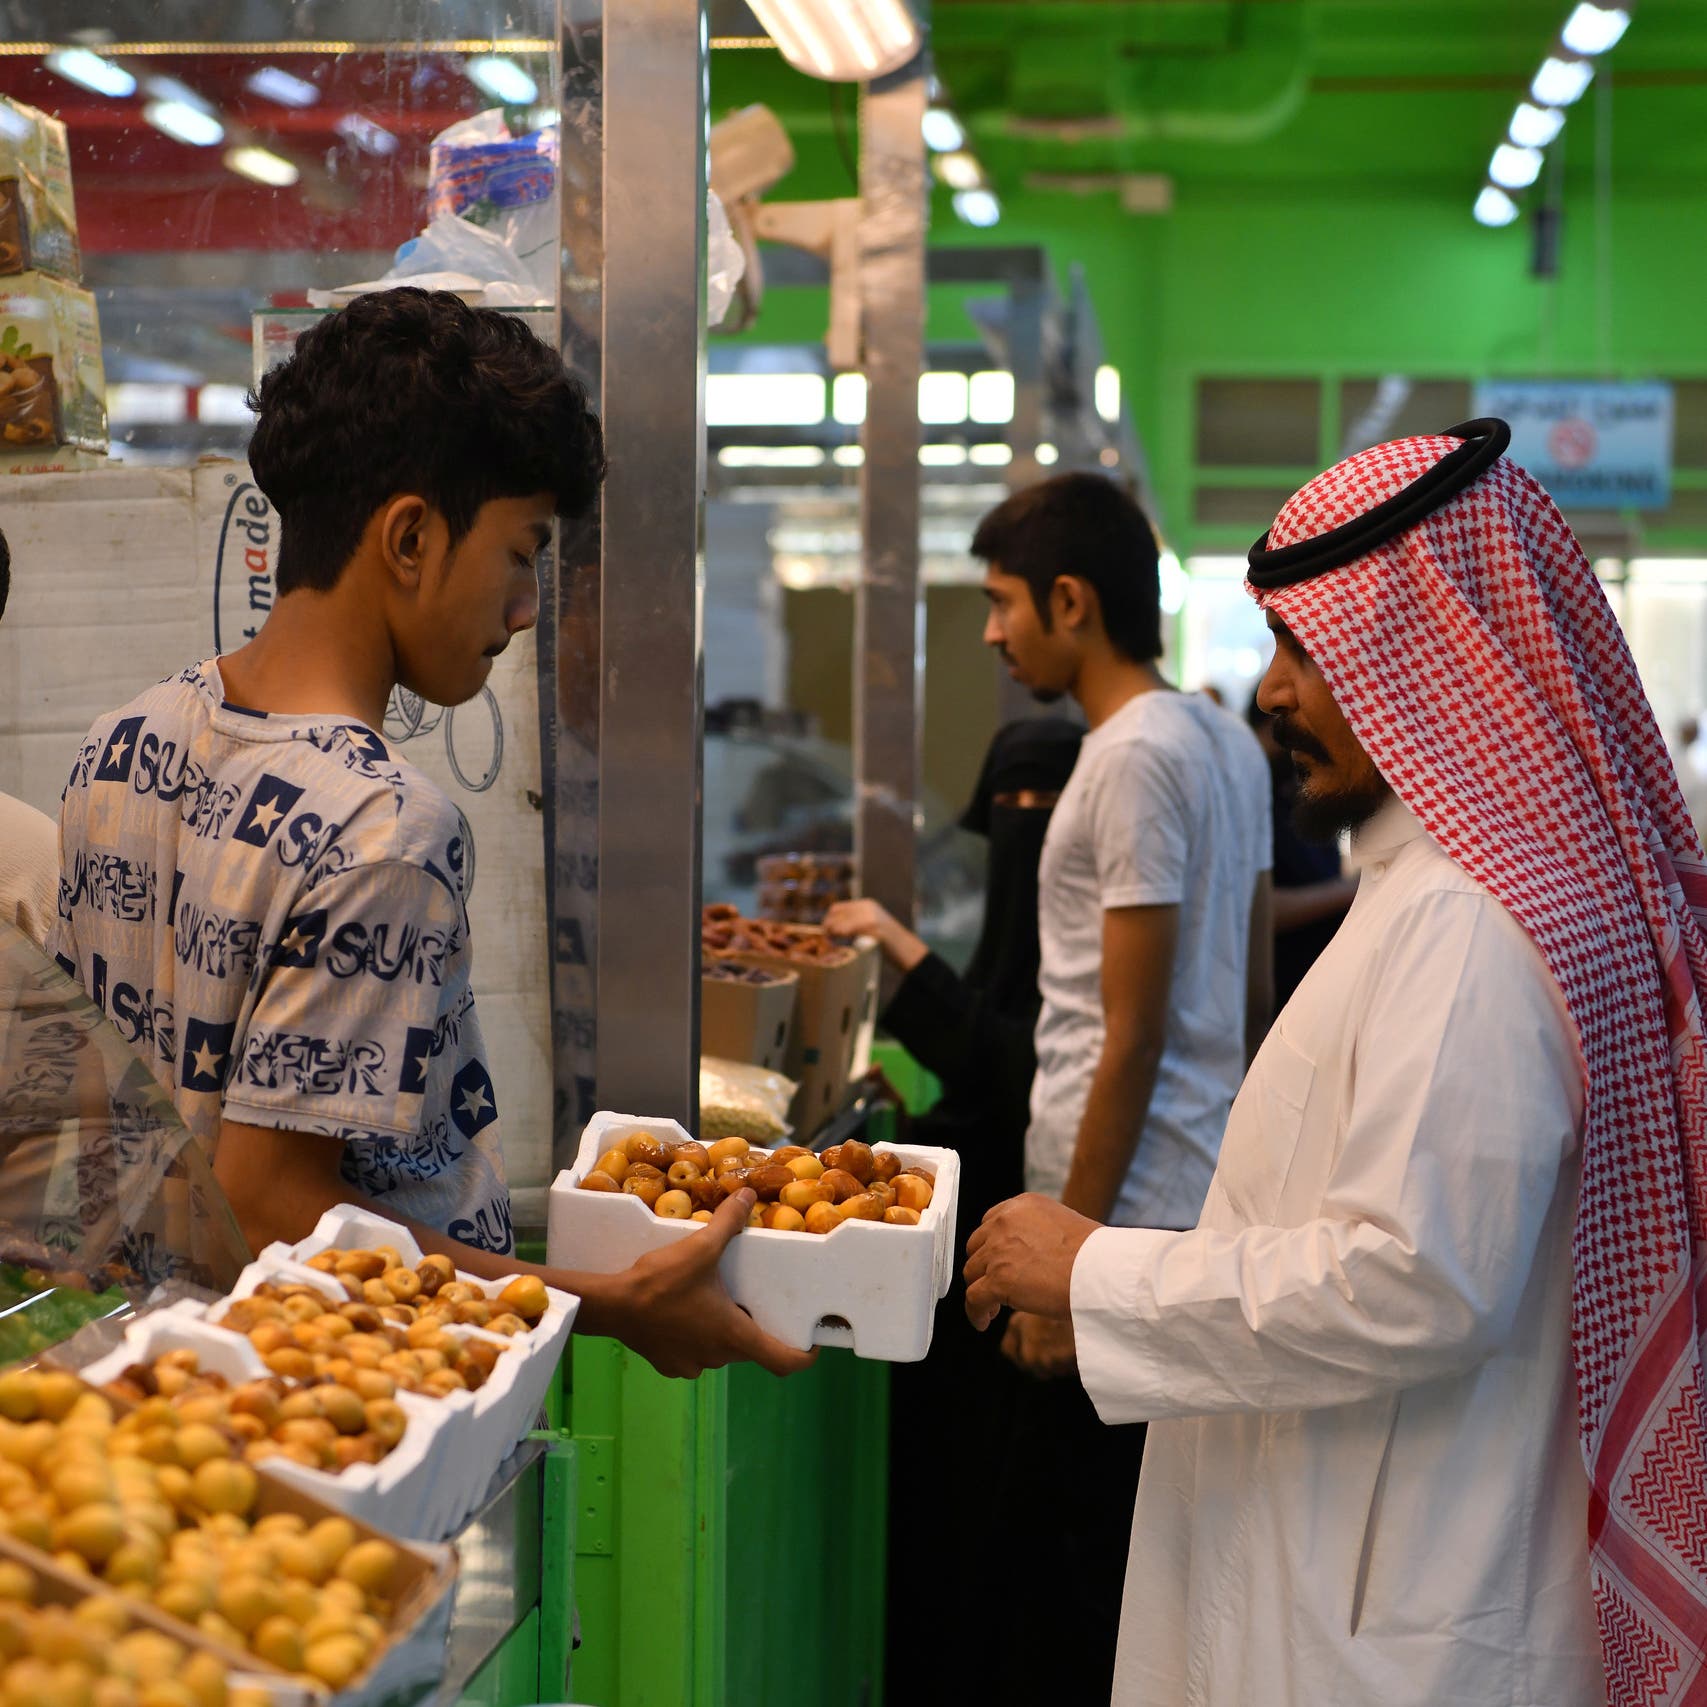 التضخم بالسعودية يرتفع 5.3% في ديسمبر 2020